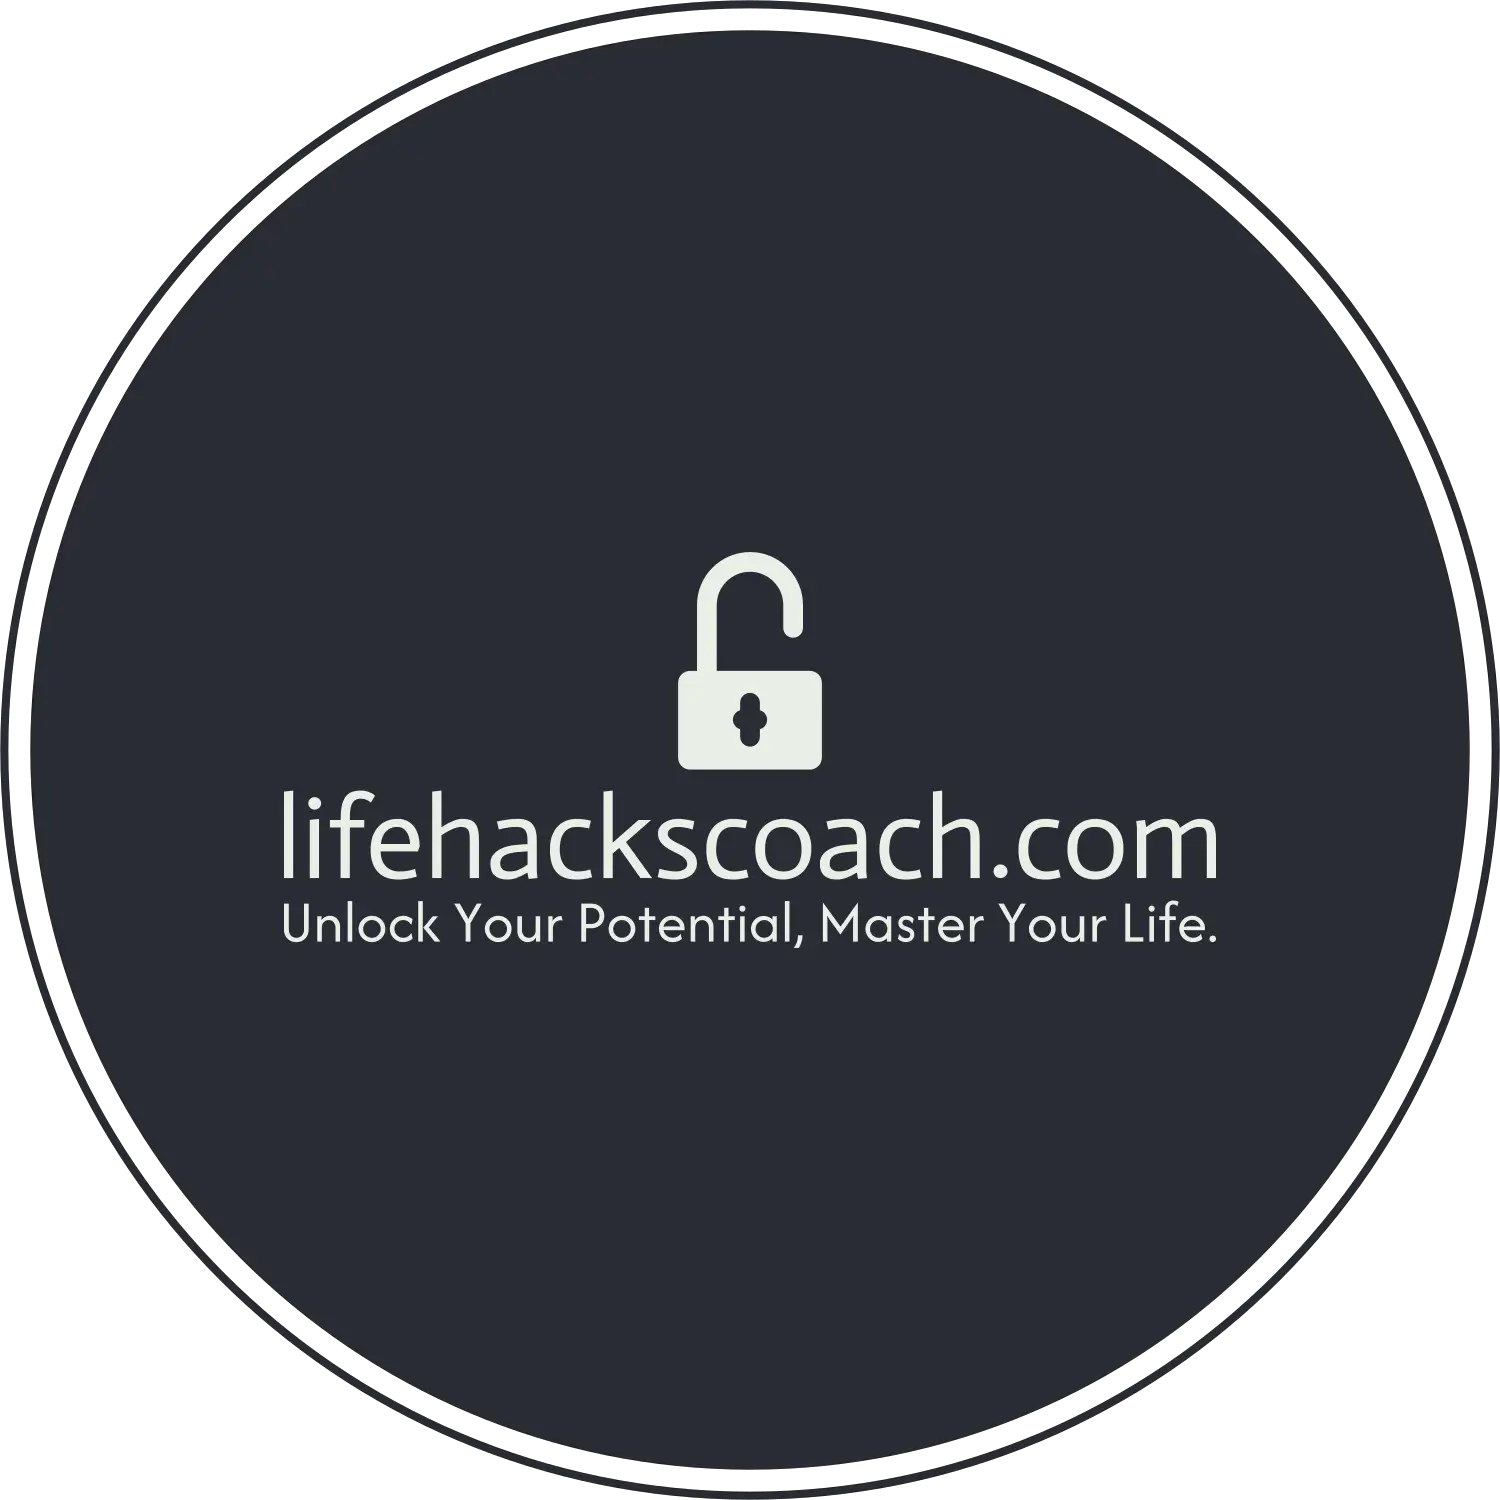 Lifehackscoach.com